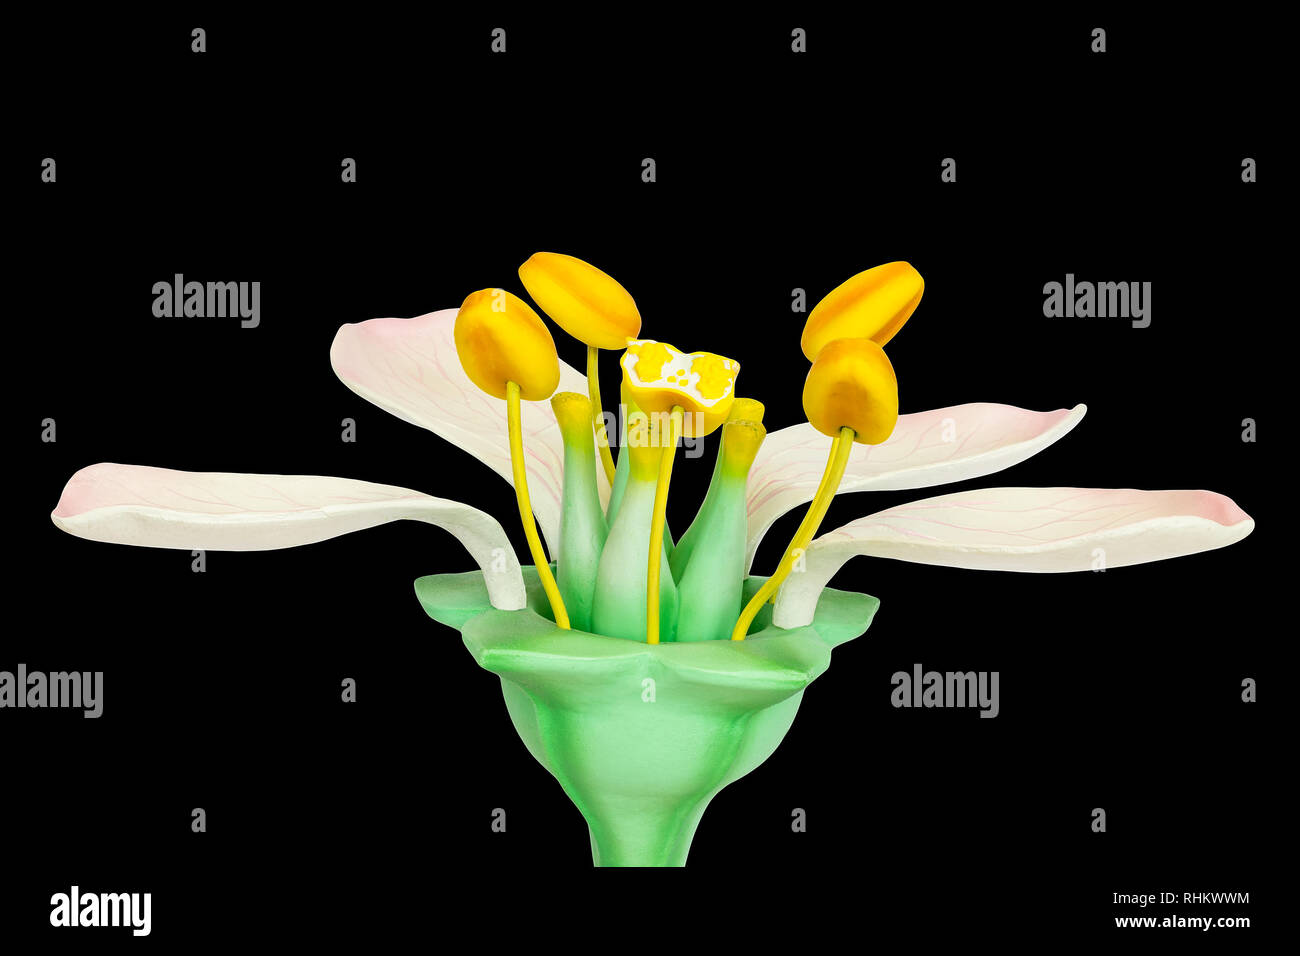 Modello di fiore con stami e pistilli isolati su sfondo nero Foto Stock